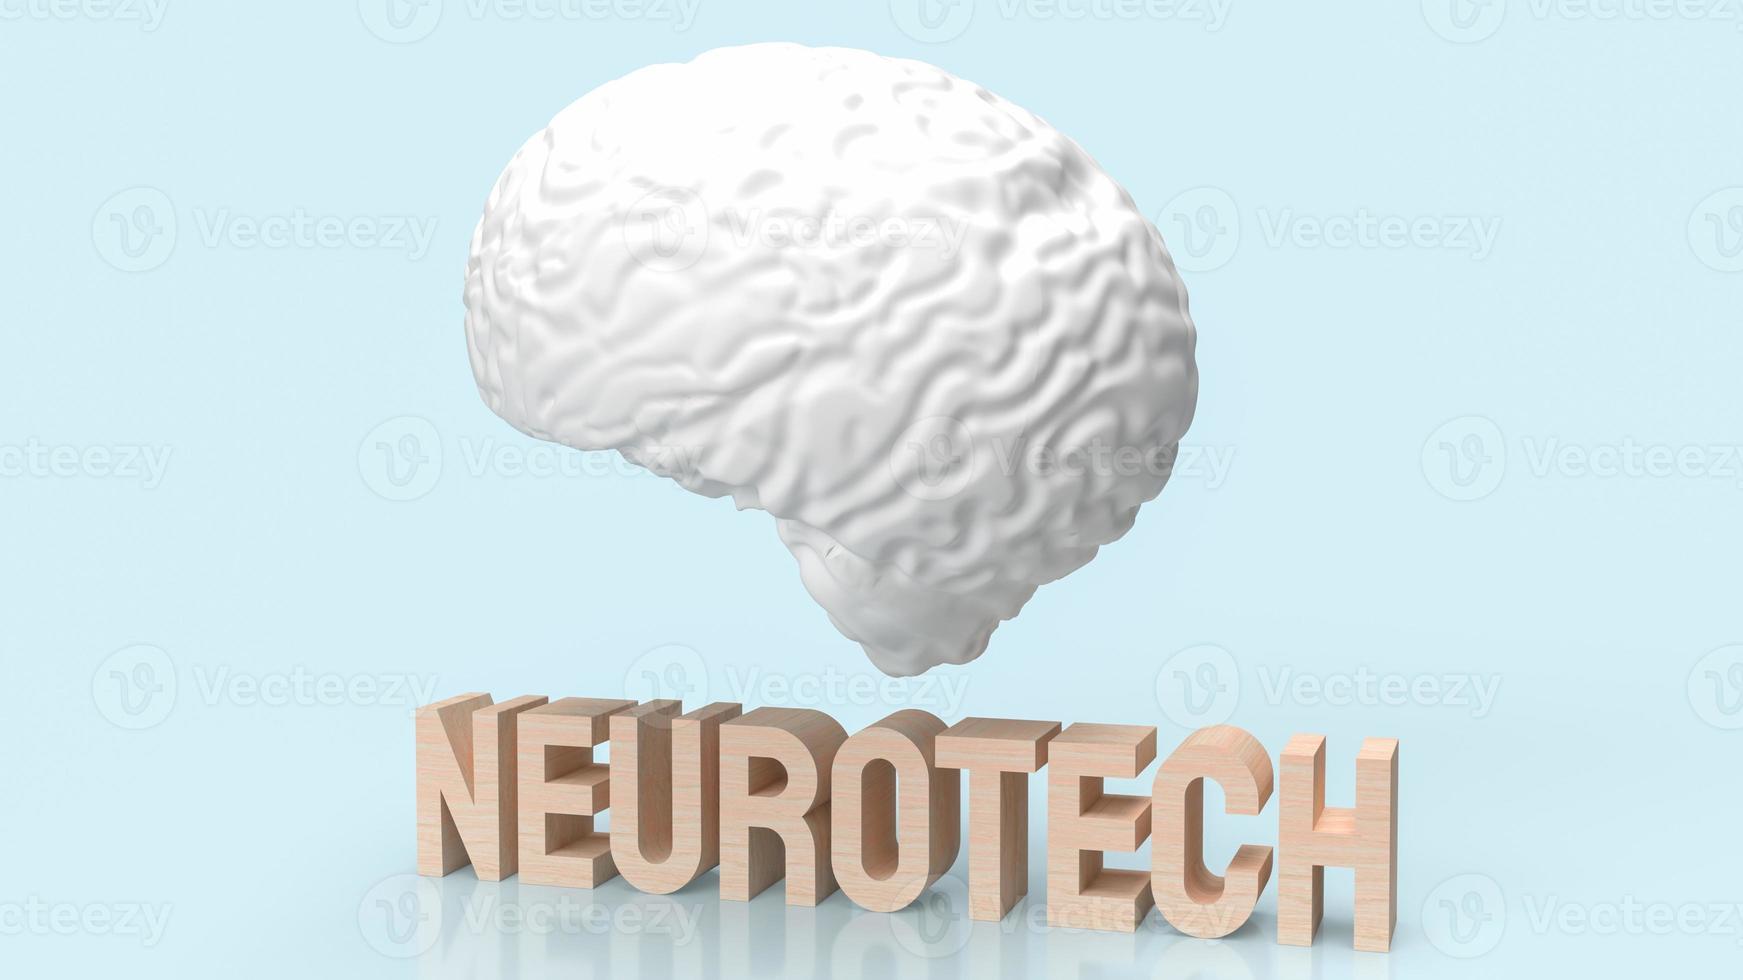 il cervello bianco e il testo in legno neueotech per il rendering 3d di concetti scientifici o medici foto